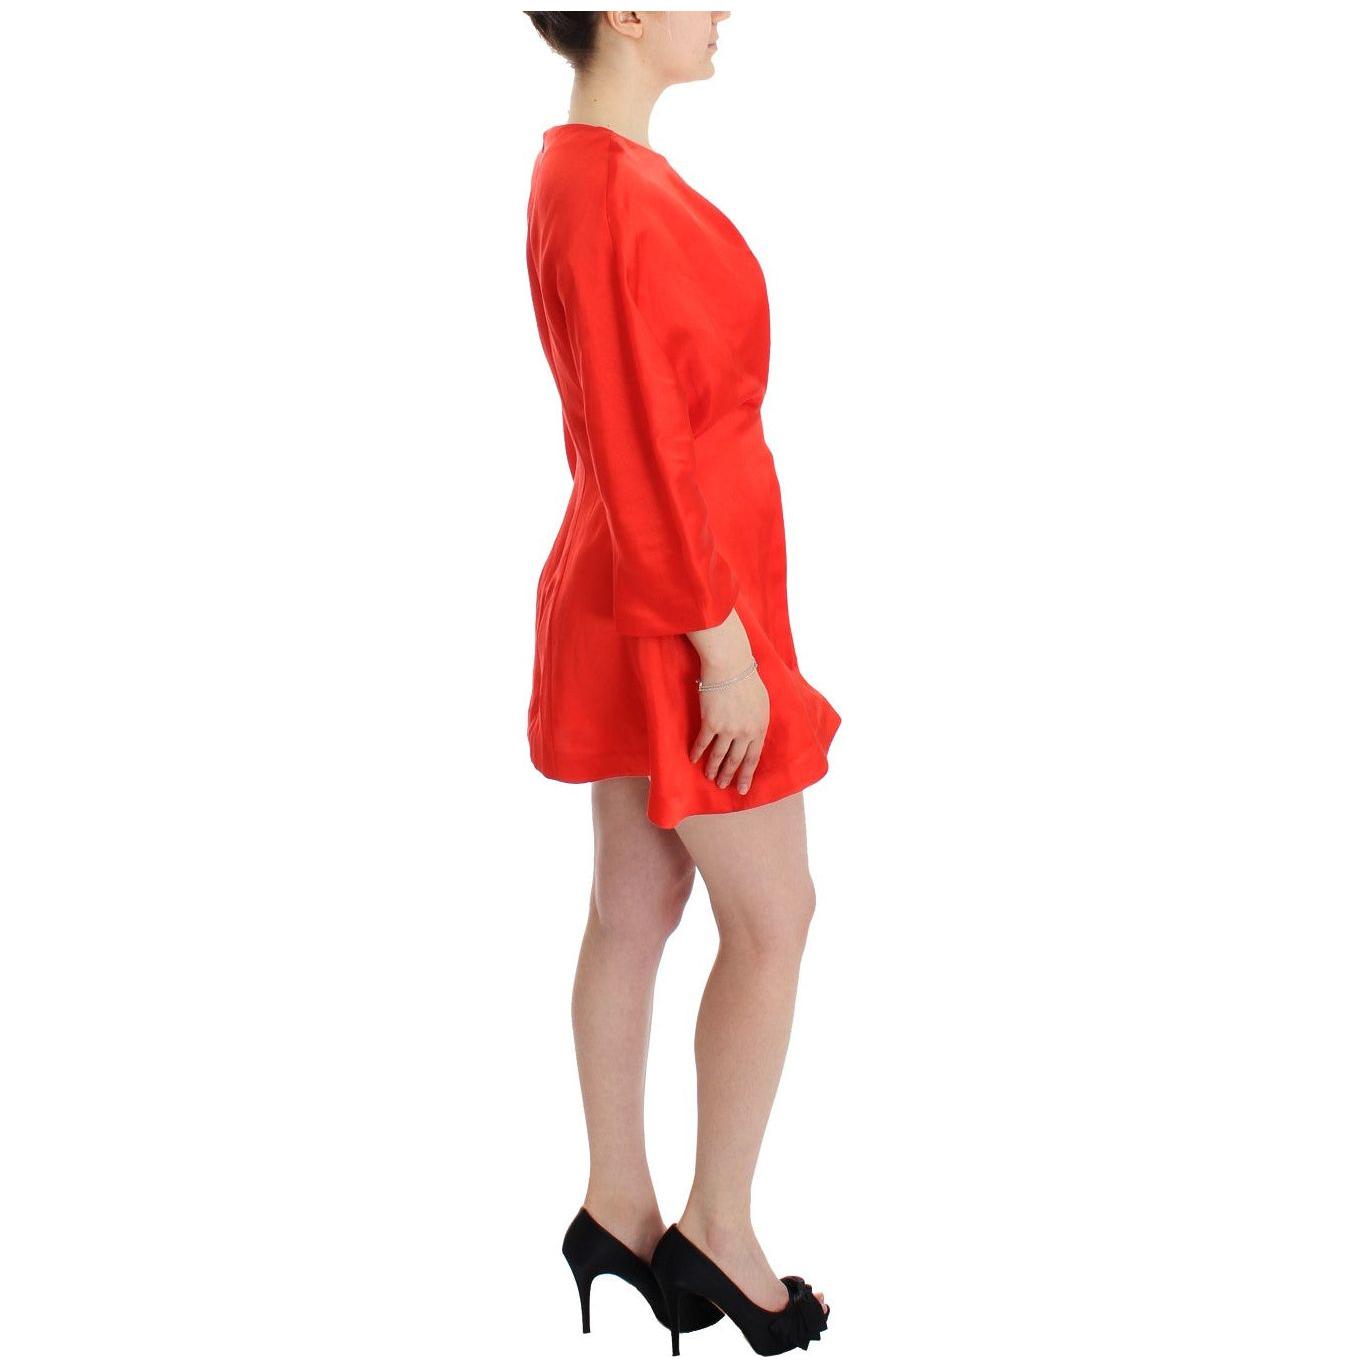 Fyodor Golan Radiant Red Linen Blend Artisan Dress red-mini-linen-3-4-sleeve-sheath-dress 185328-red-mini-linen-34-sleeve-sheath-dress-3.jpg